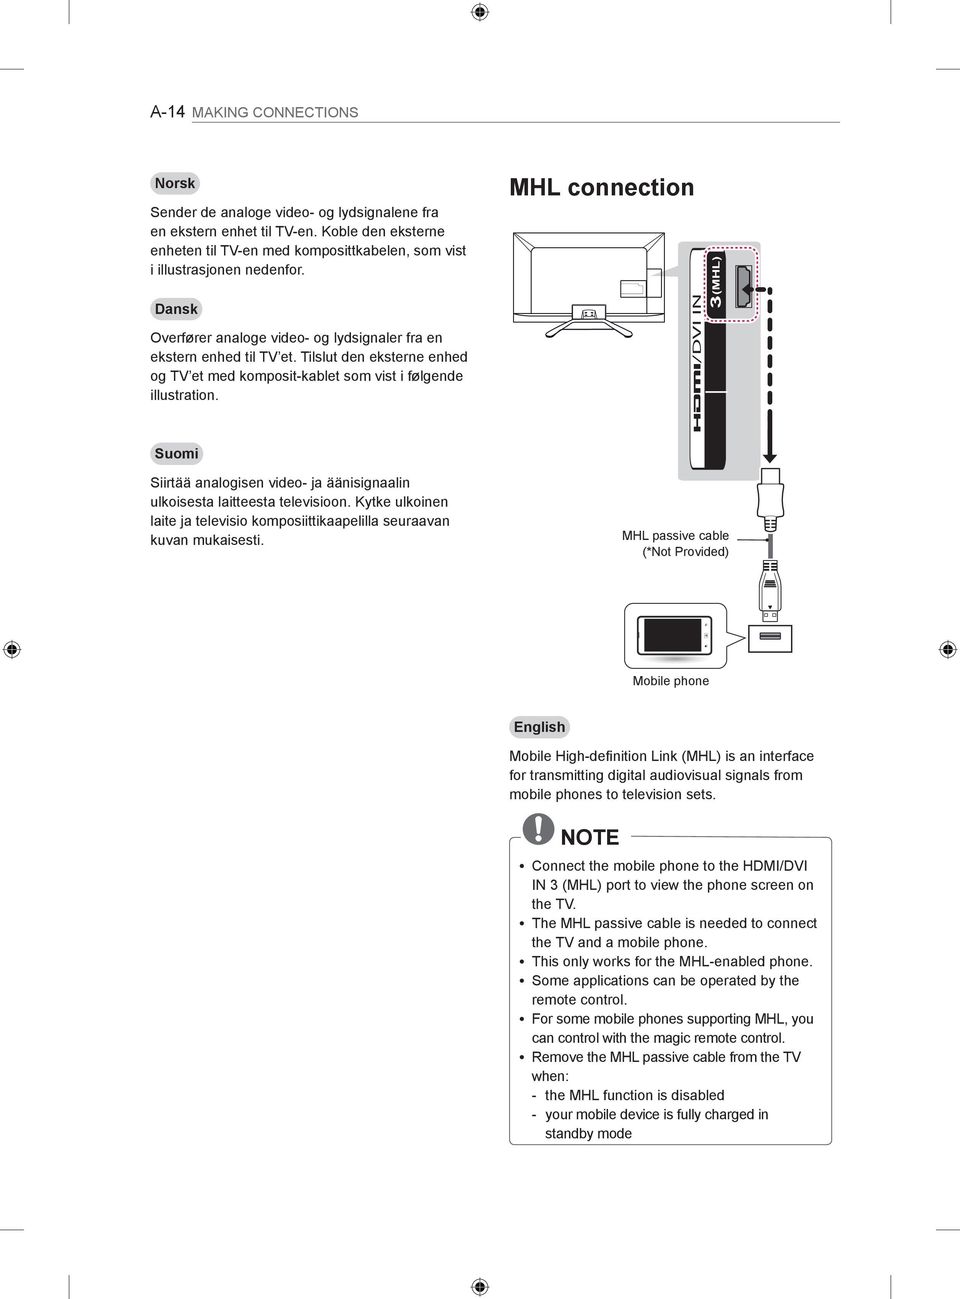 MHL connection 3 (MHL) /DVI IN Suomi Siirtää analogisen video- ja äänisignaalin ulkoisesta laitteesta televisioon. Kytke ulkoinen laite ja televisio komposiittikaapelilla seuraavan kuvan mukaisesti.